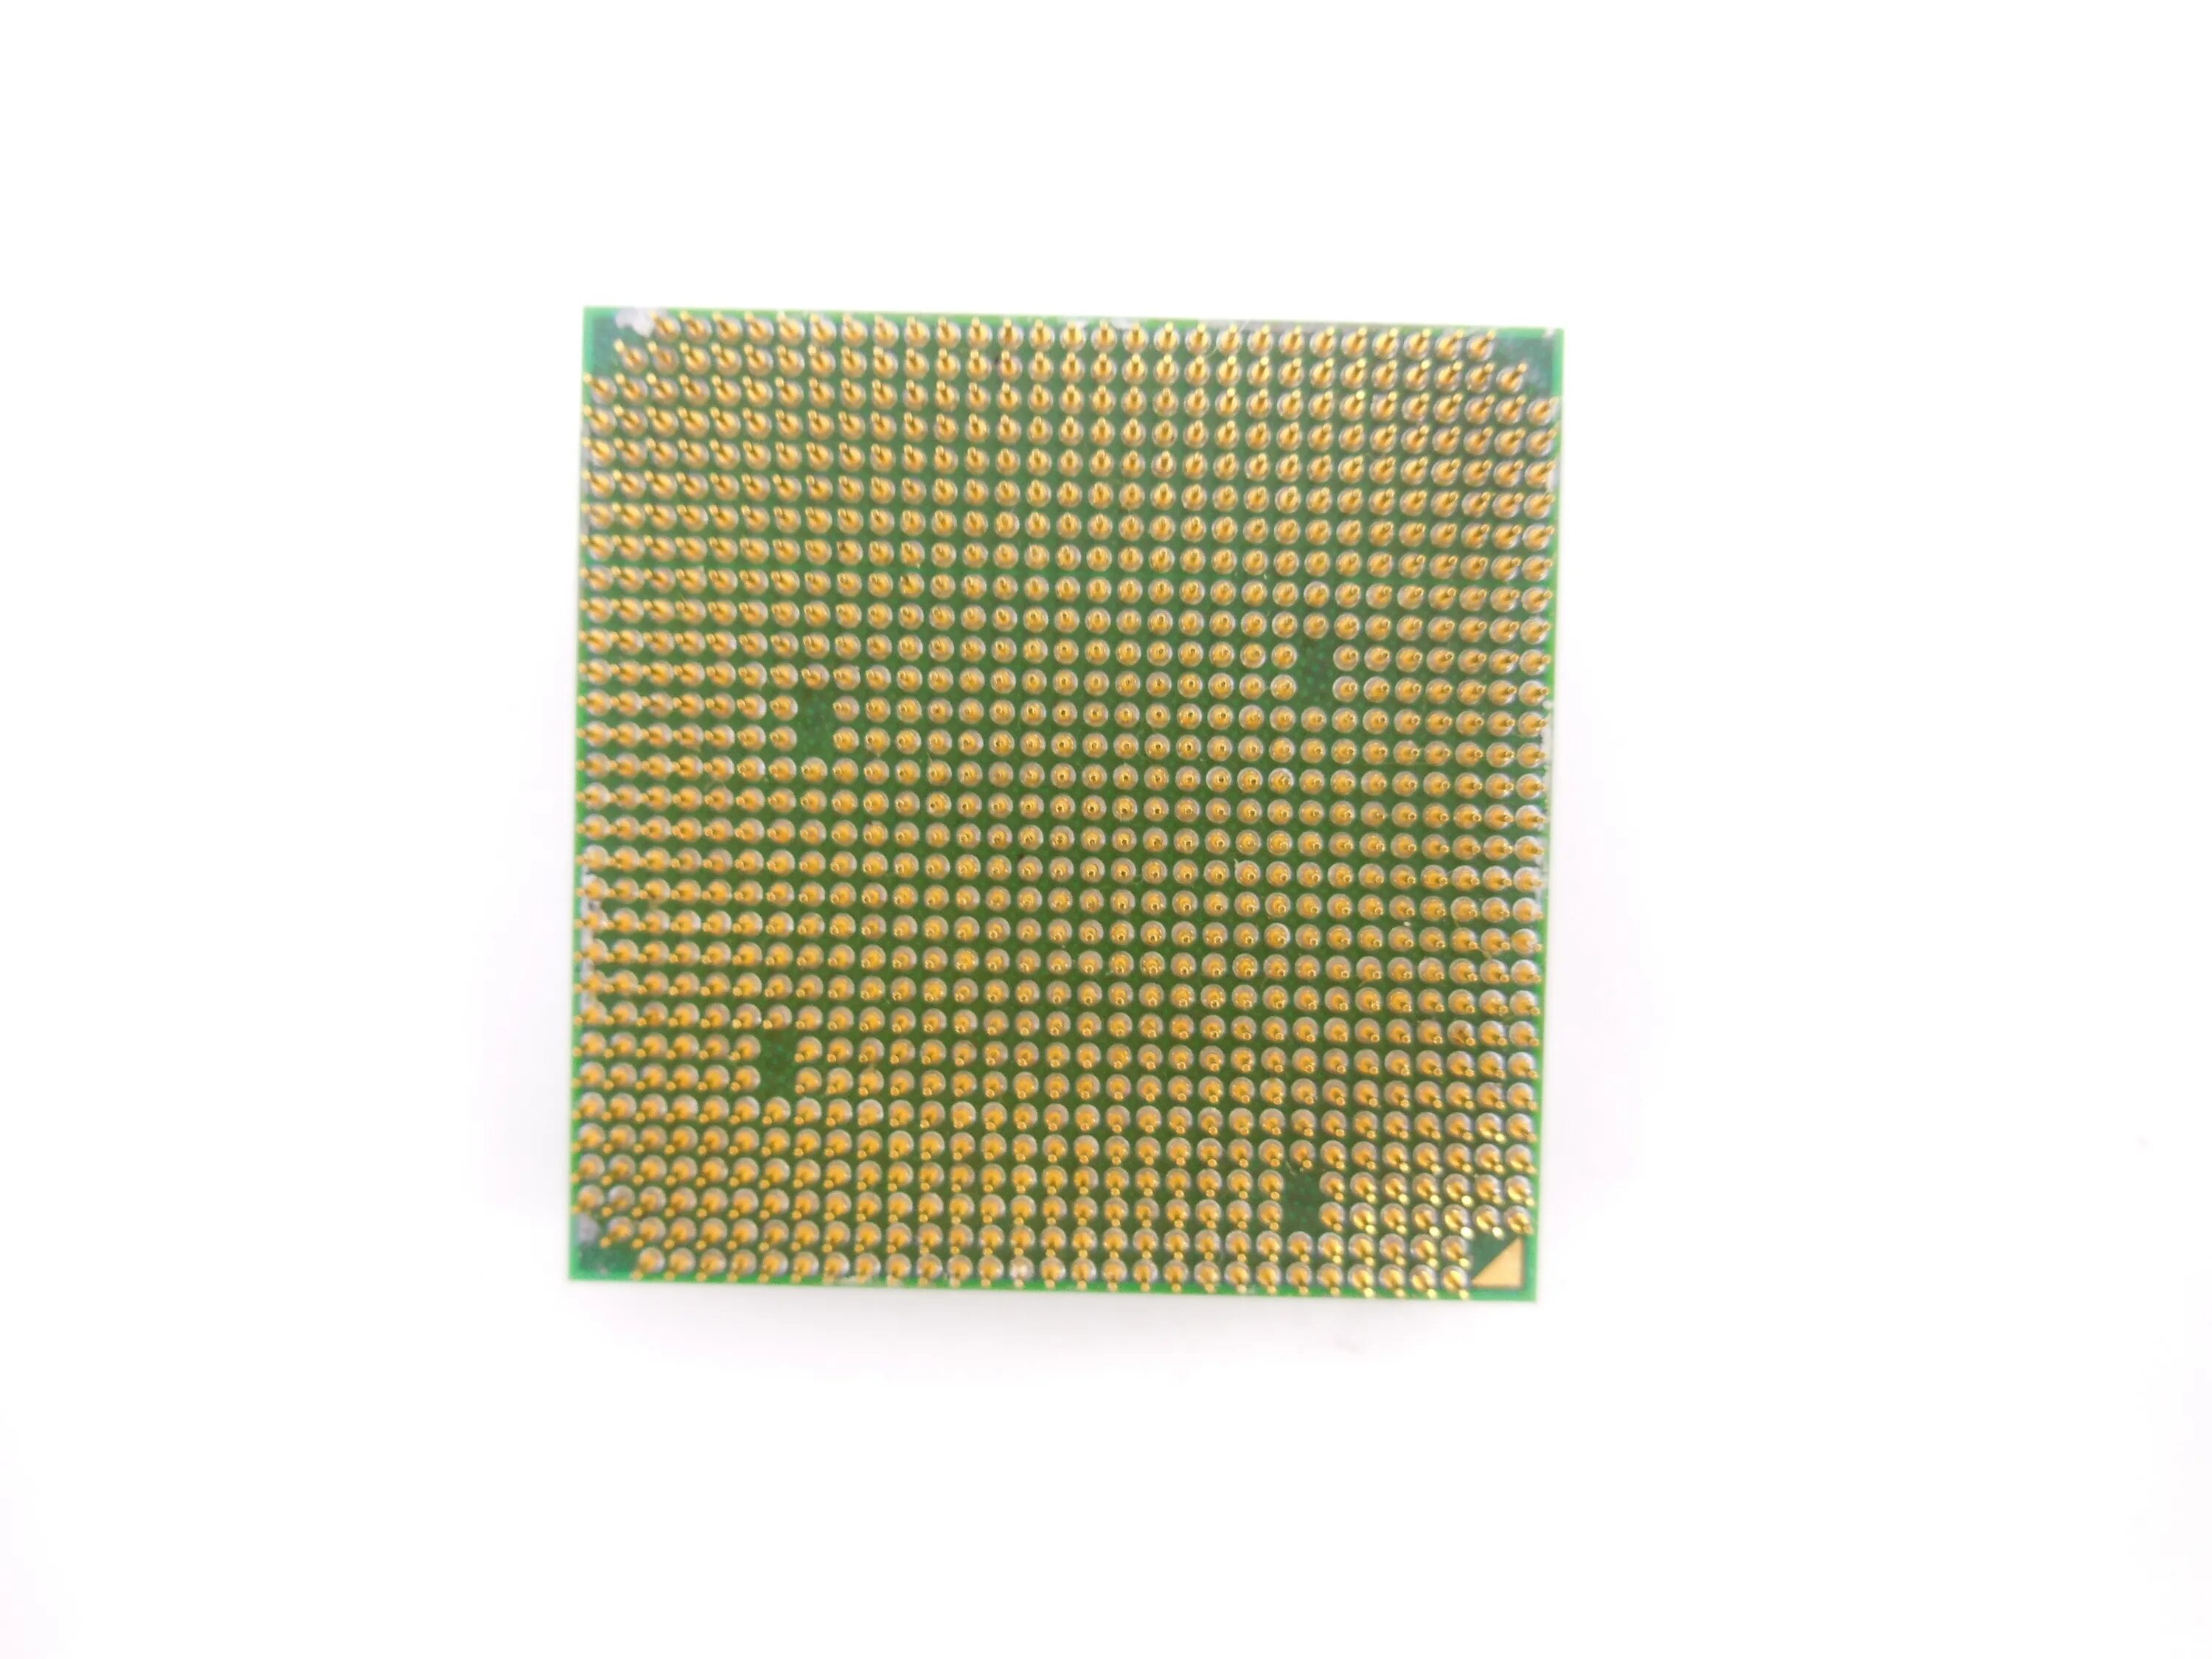 AMD Athlon 64 x2. Am2 Athlon 64 x2. AMD Athlon 64 x2 4400+. AMD Athlon 64 x2 4400+ сокет.